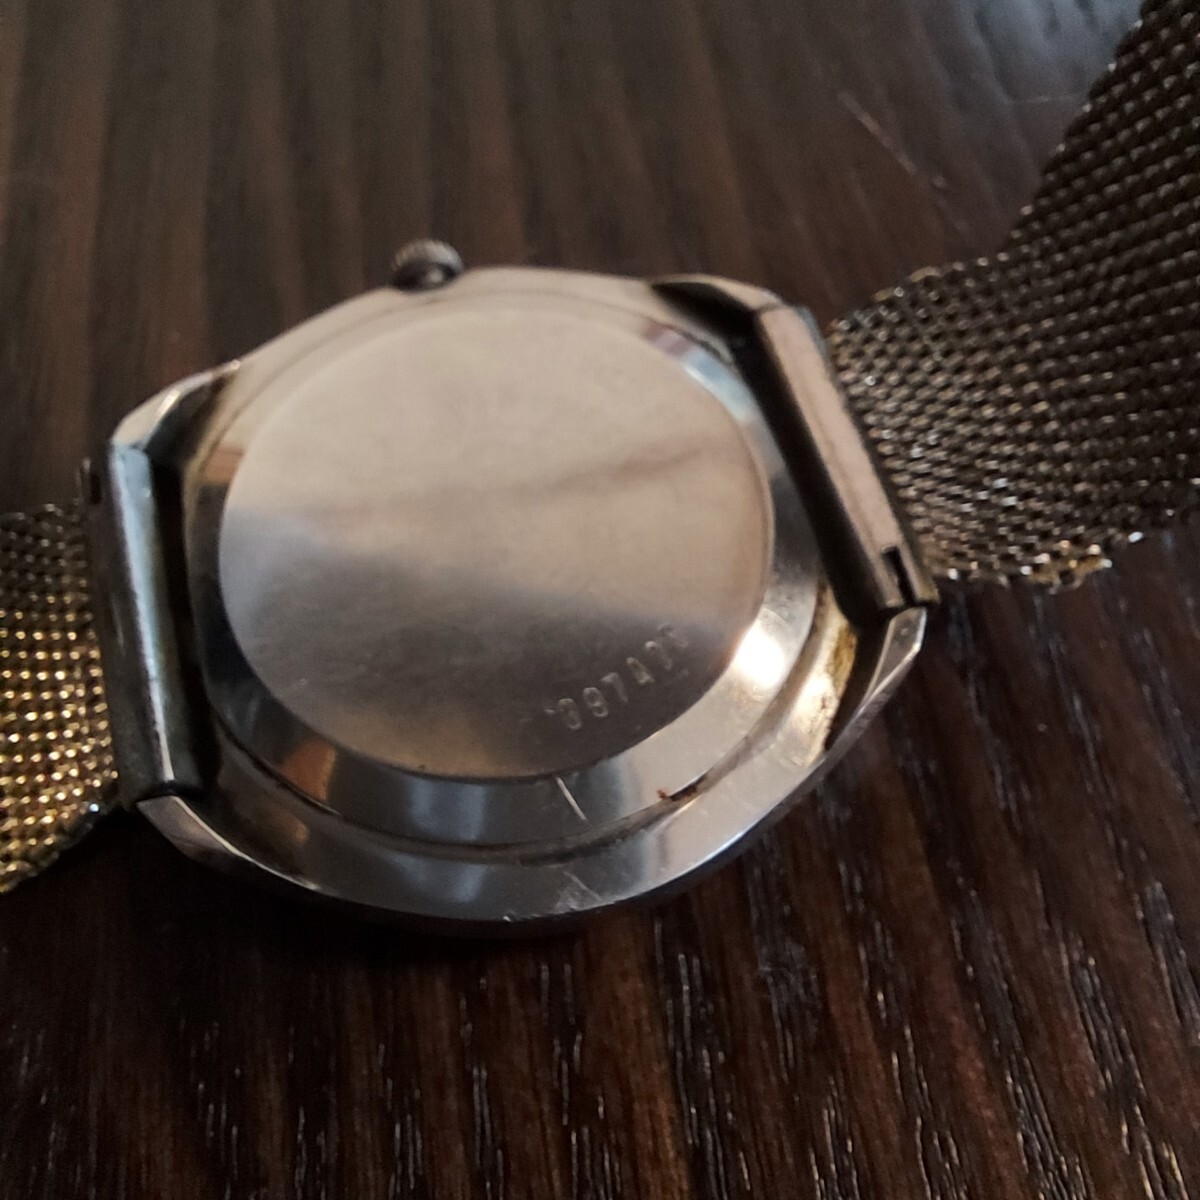 オリエントファインネス ウルトラマチック 35石 自動巻き 腕時計 orient fineness オートマチック_画像10